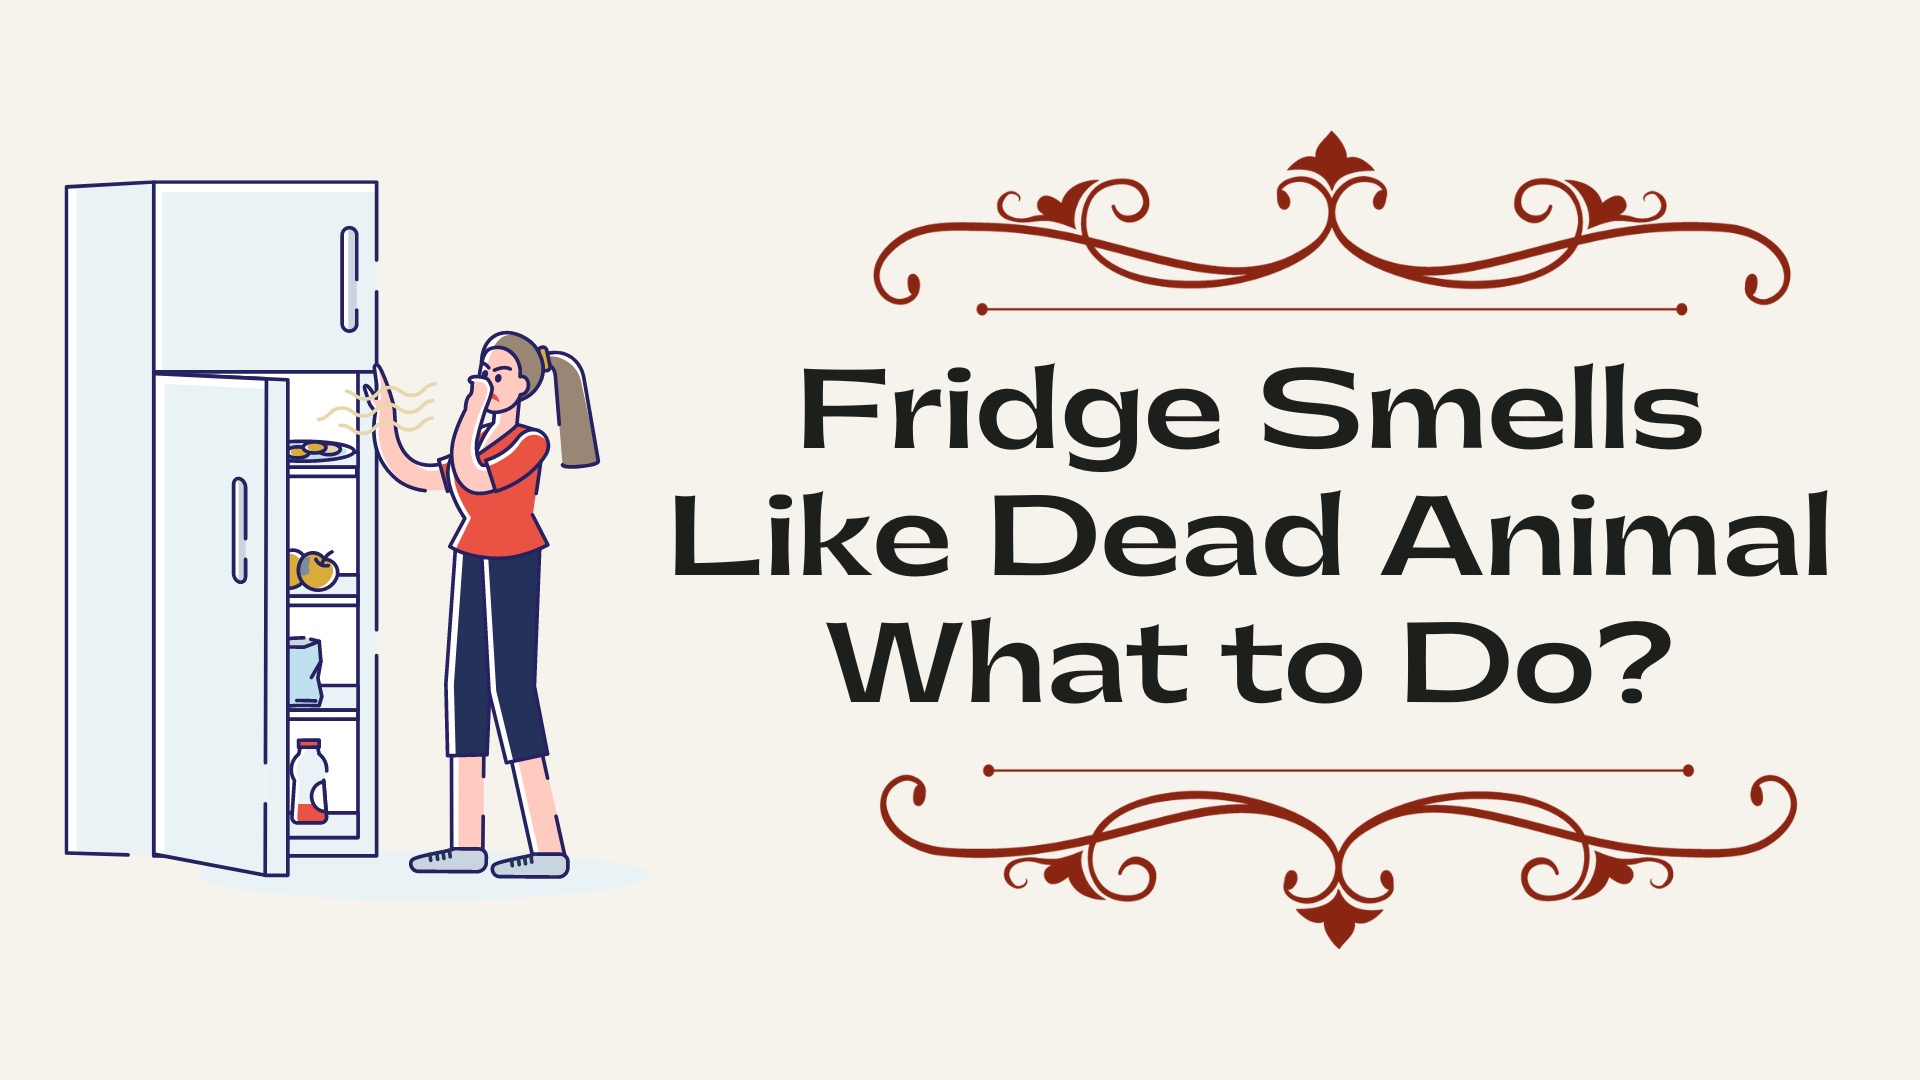 Fridge Smells Like Dead Animal What to Do?